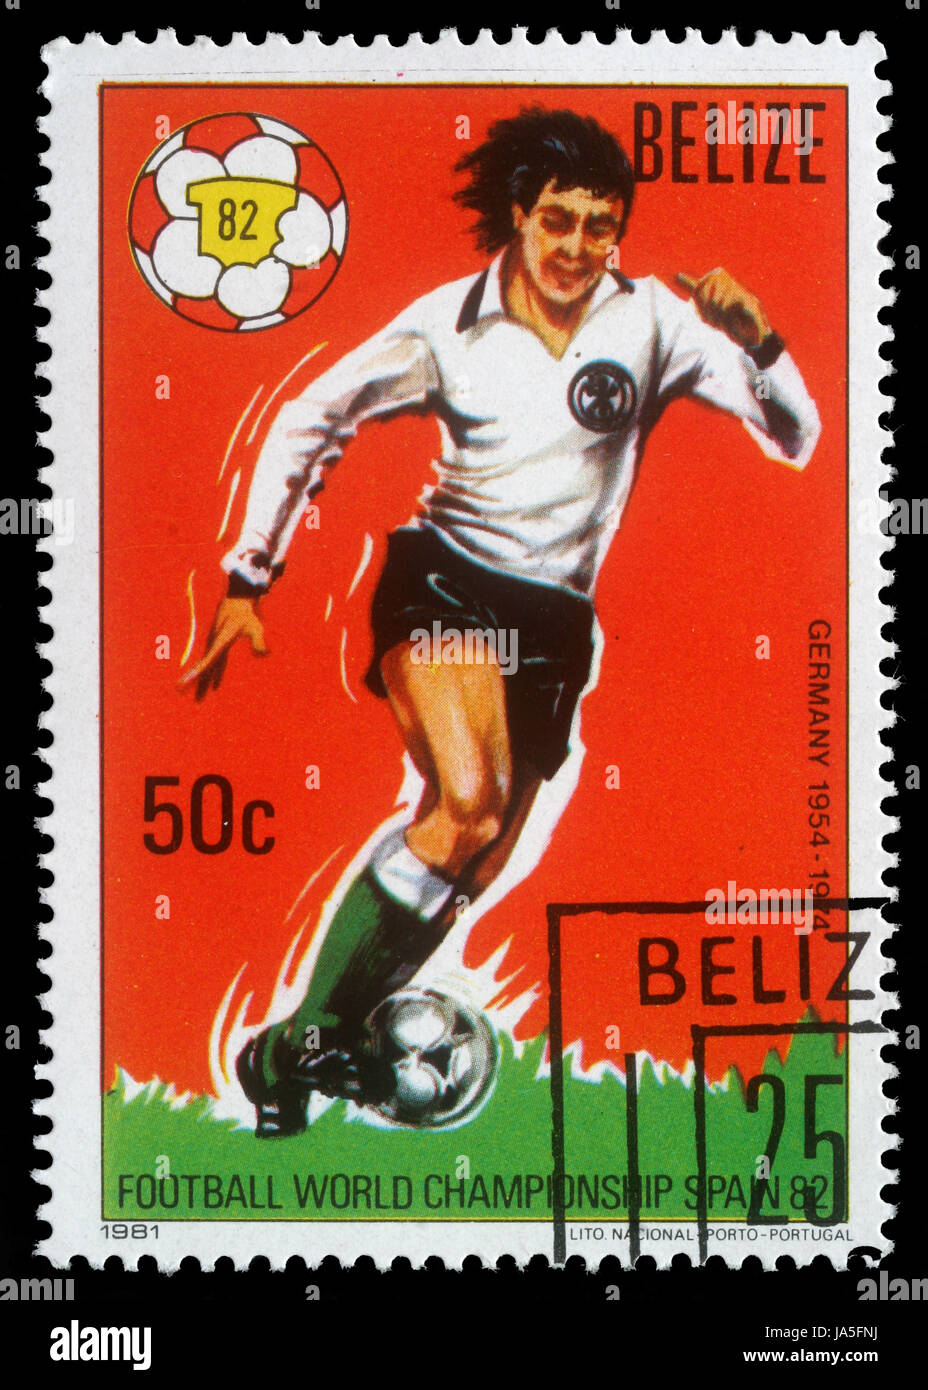 BELIZE - VERS 1982 : 1982 timbres par le Belize, spectacles du monde, l'Espagne, vers 1982. Banque D'Images